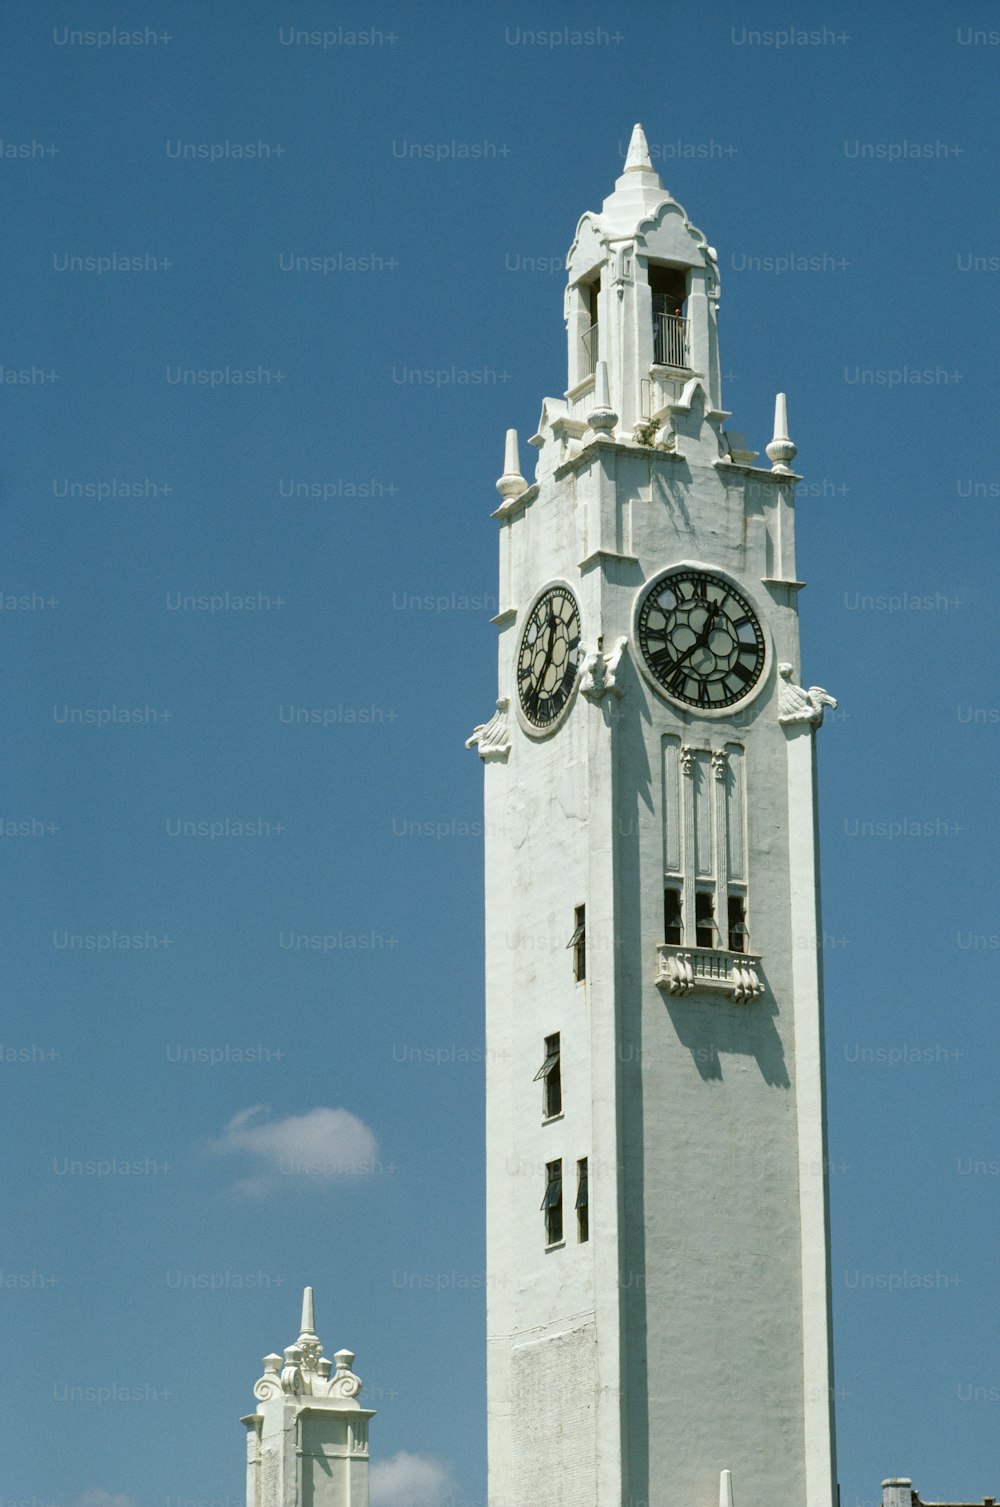 une grande tour d’horloge blanche avec une horloge de chaque côté